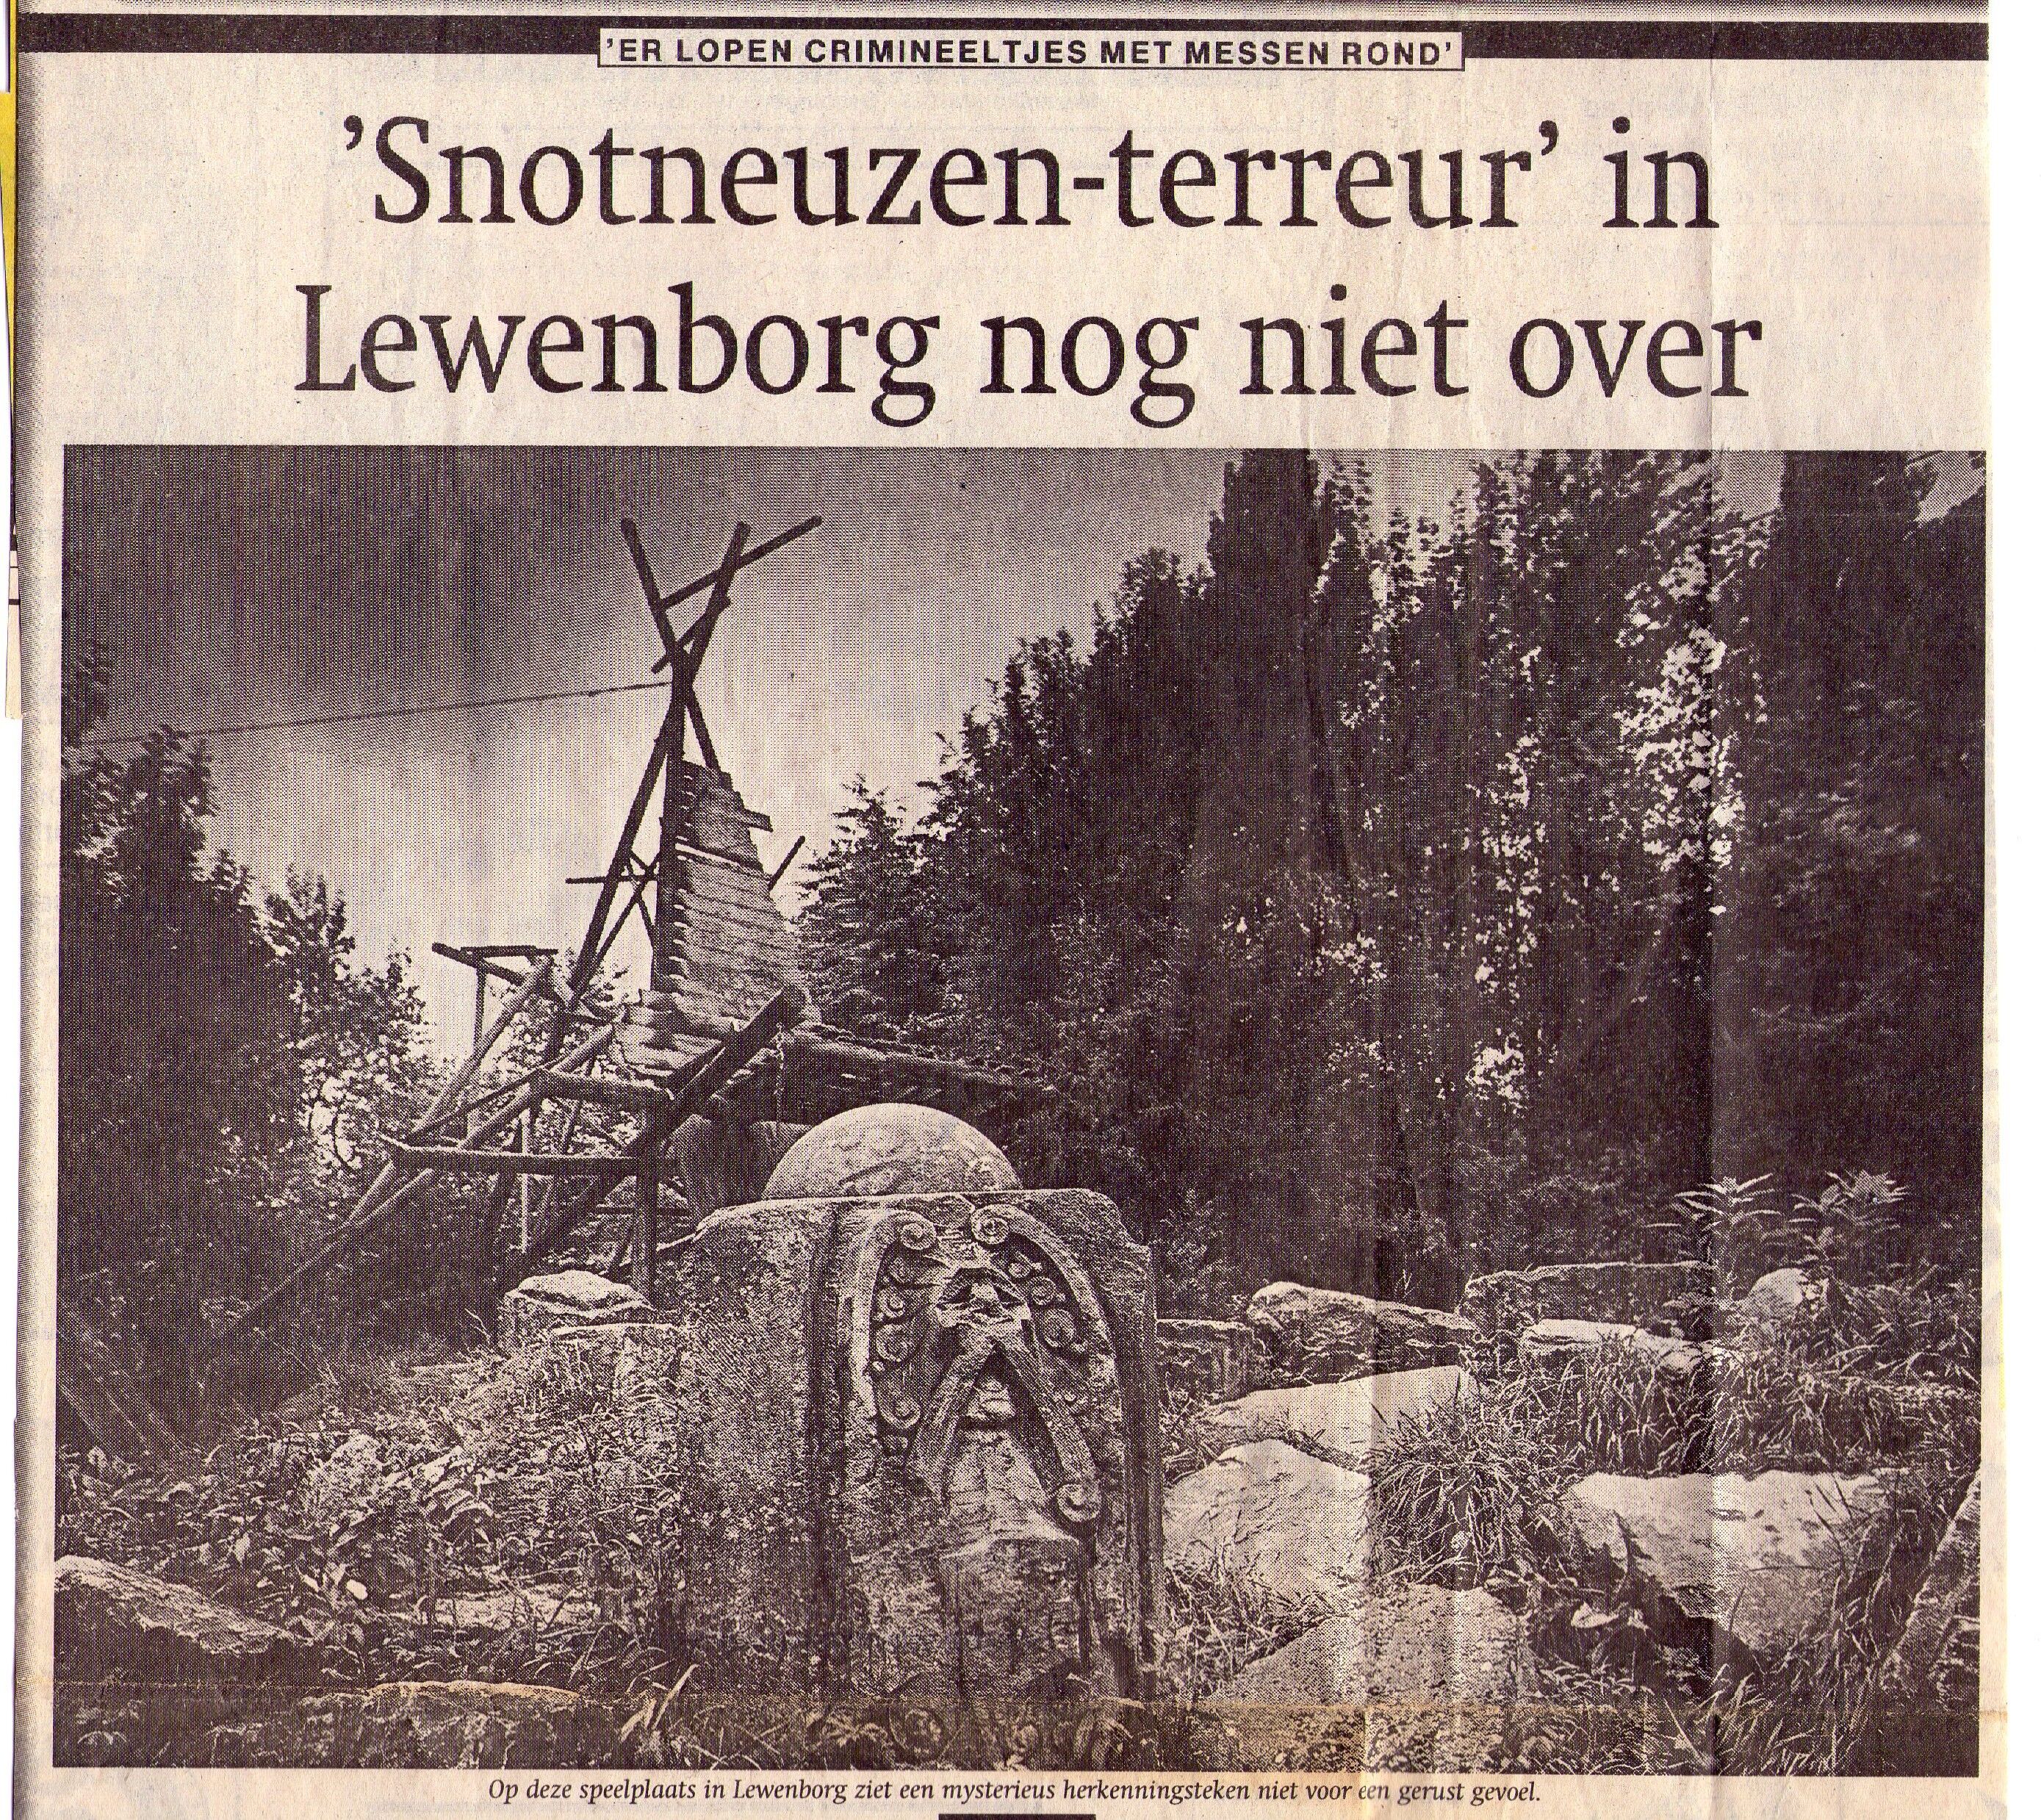 19940907_Snotneuzen-terreur_inLewenborg_003.jpg